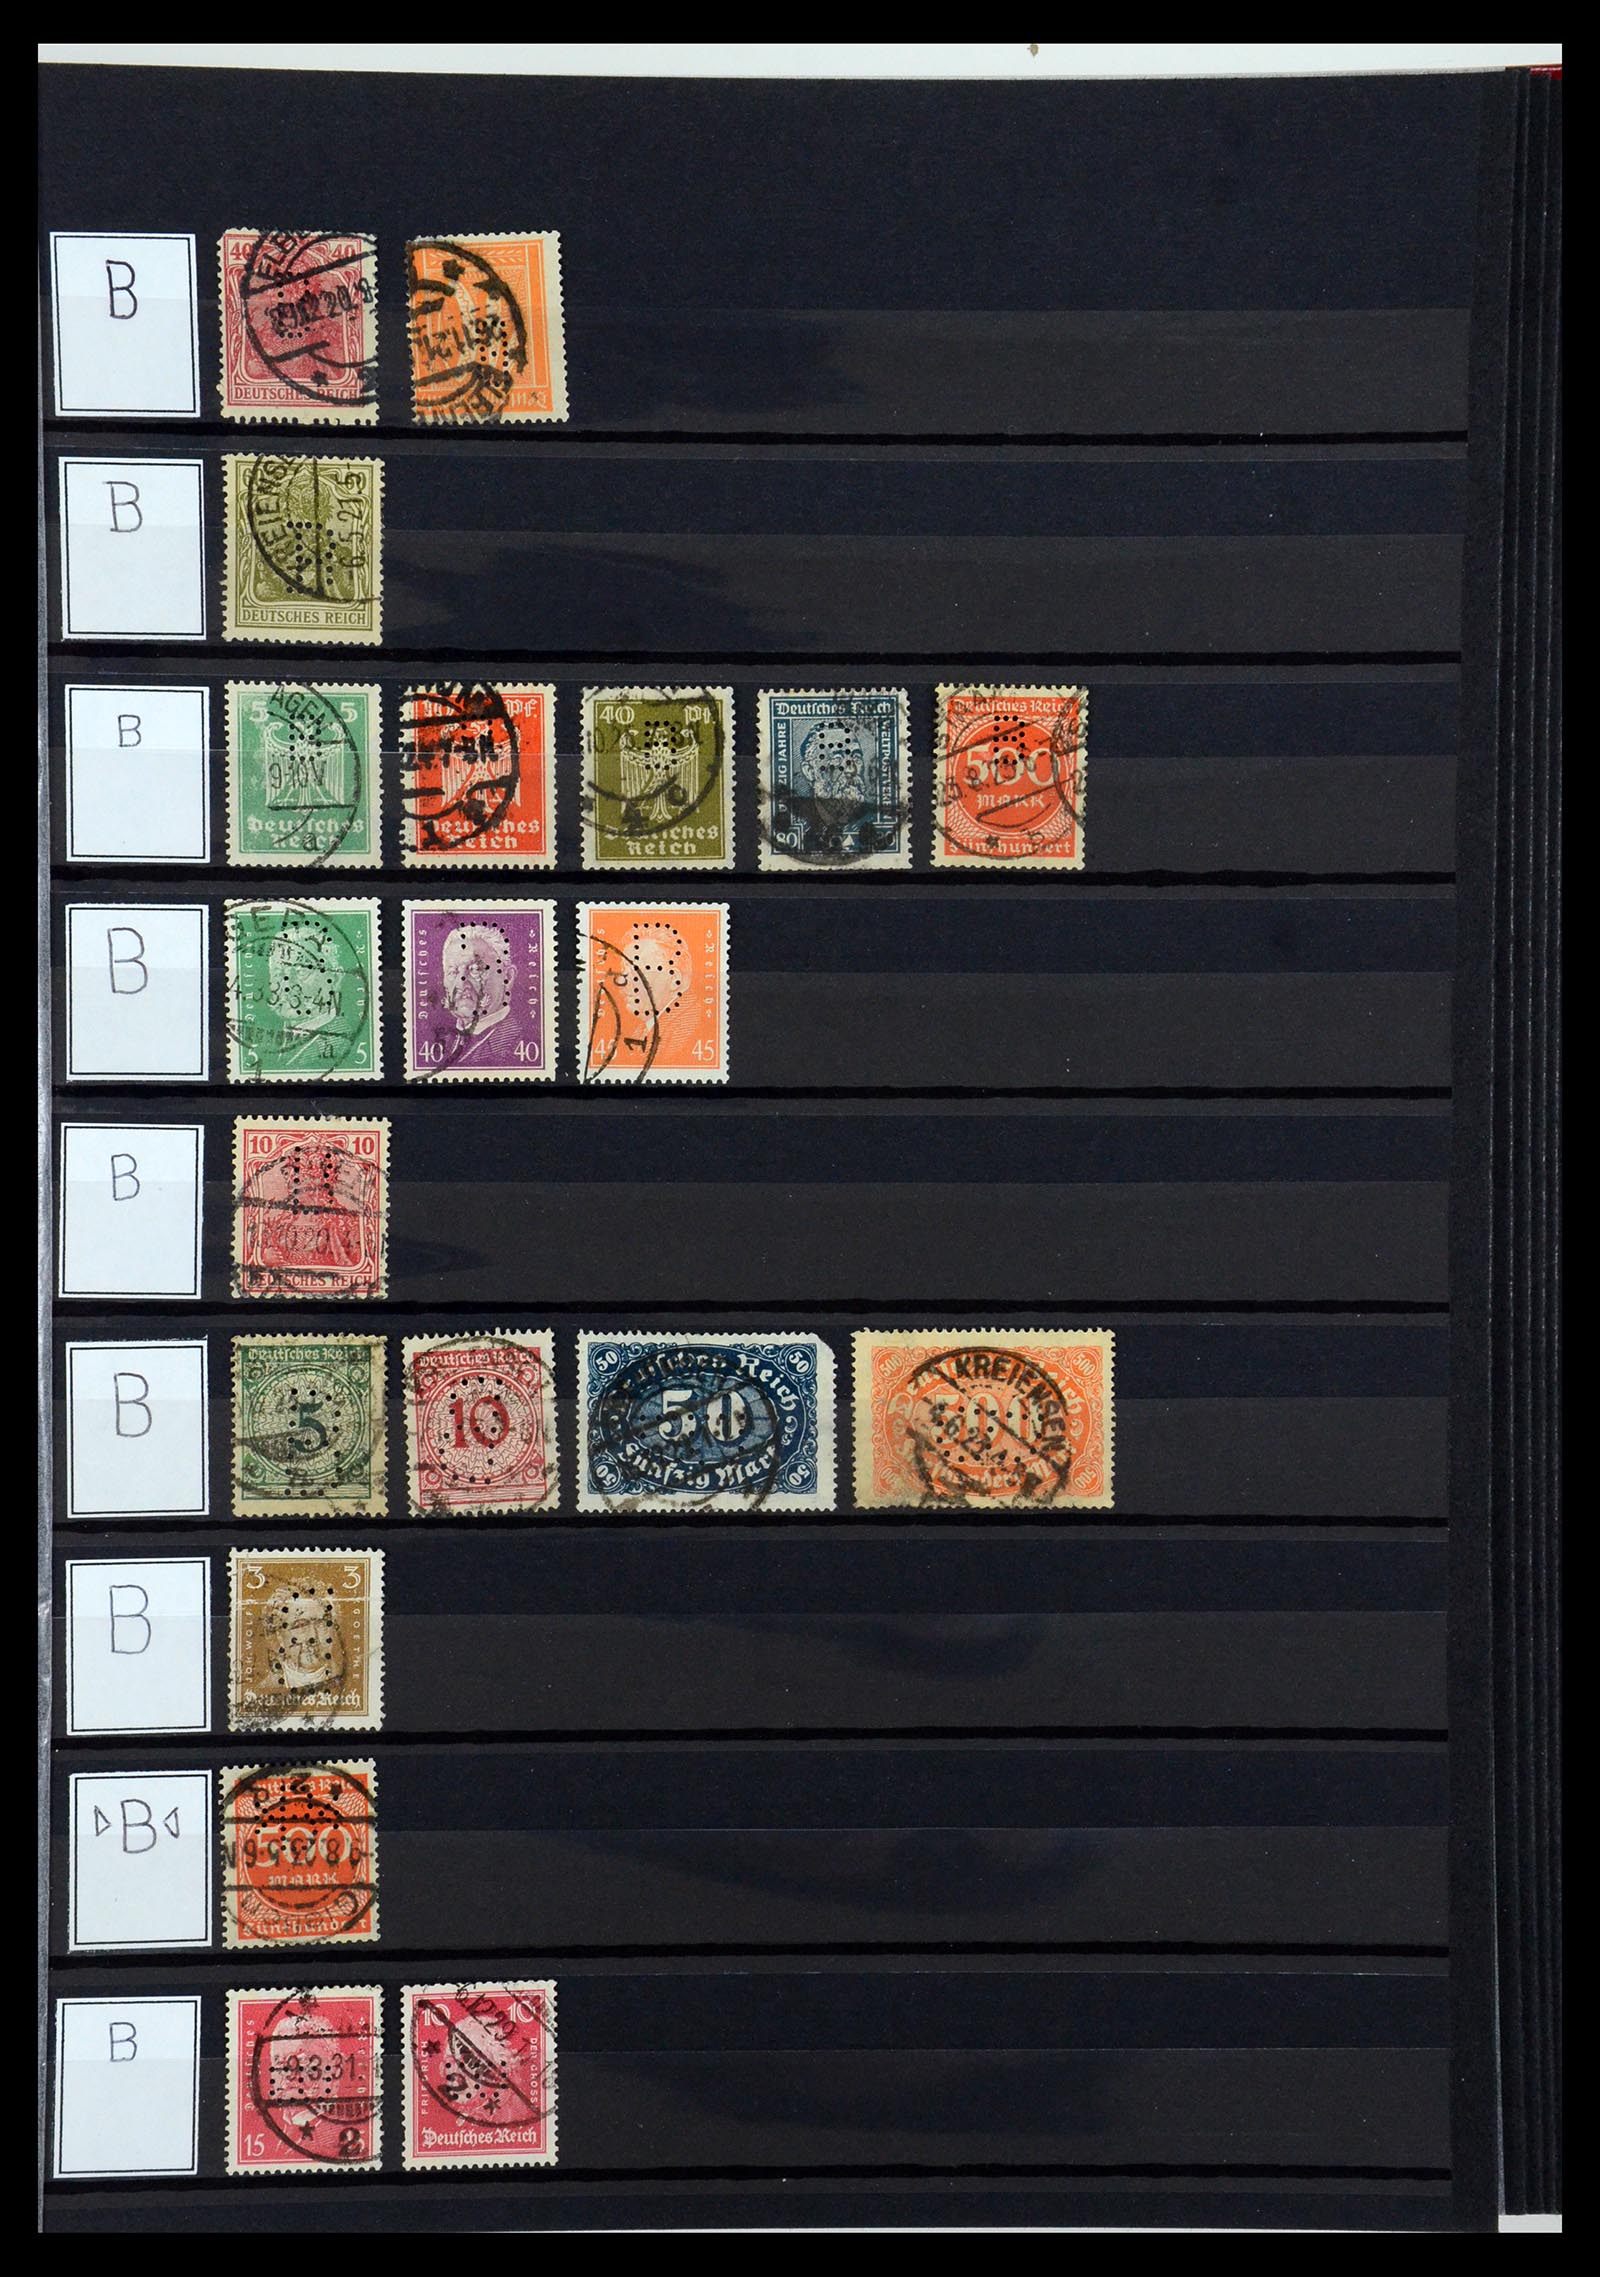 36405 033 - Stamp collection 36405 German Reich perfins 1880-1945.